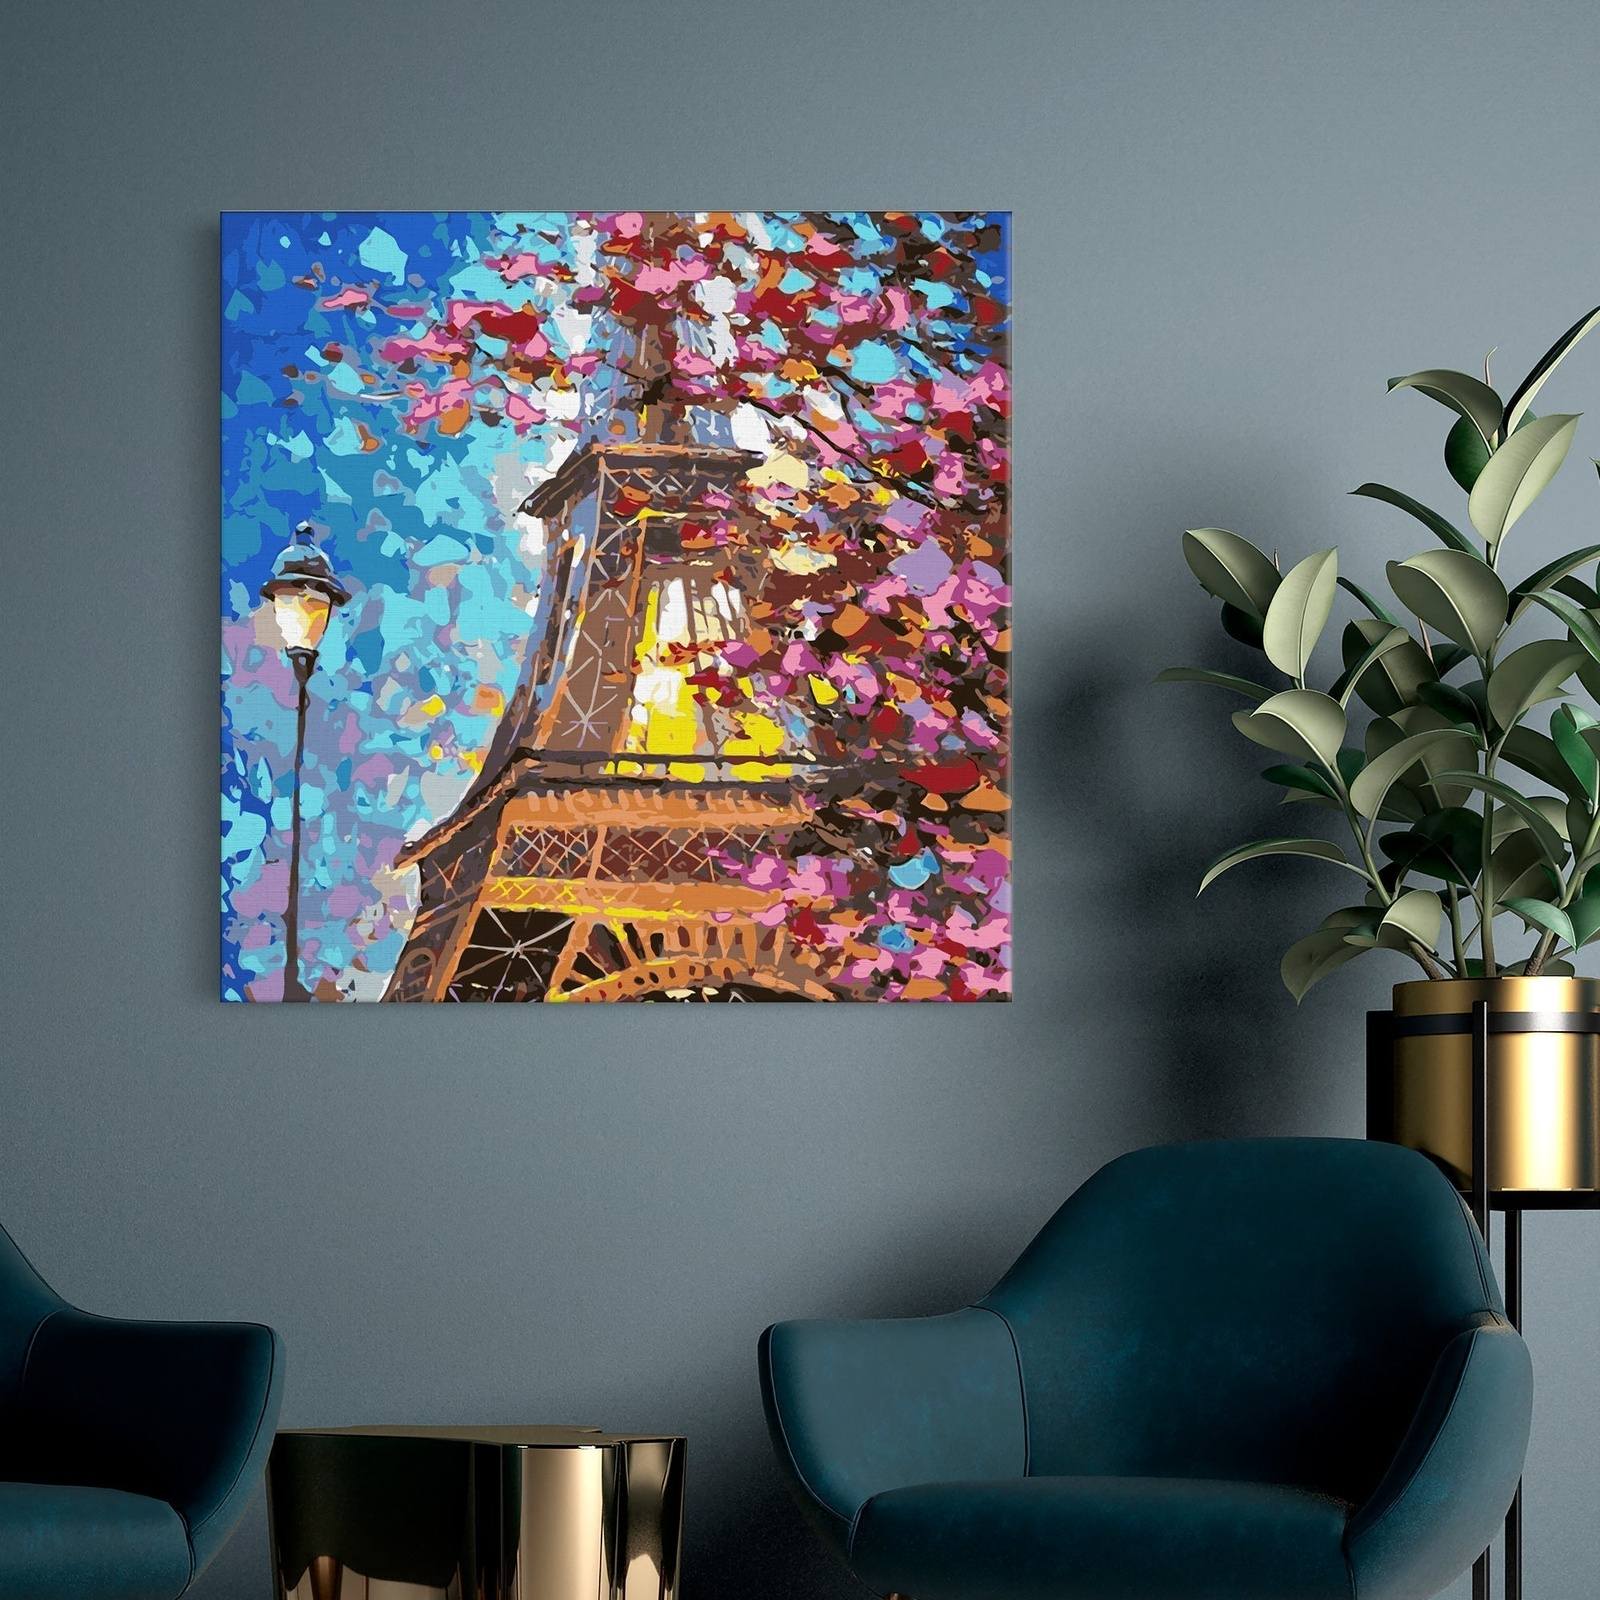 Paříž, Eiffelova věž (PC0602)